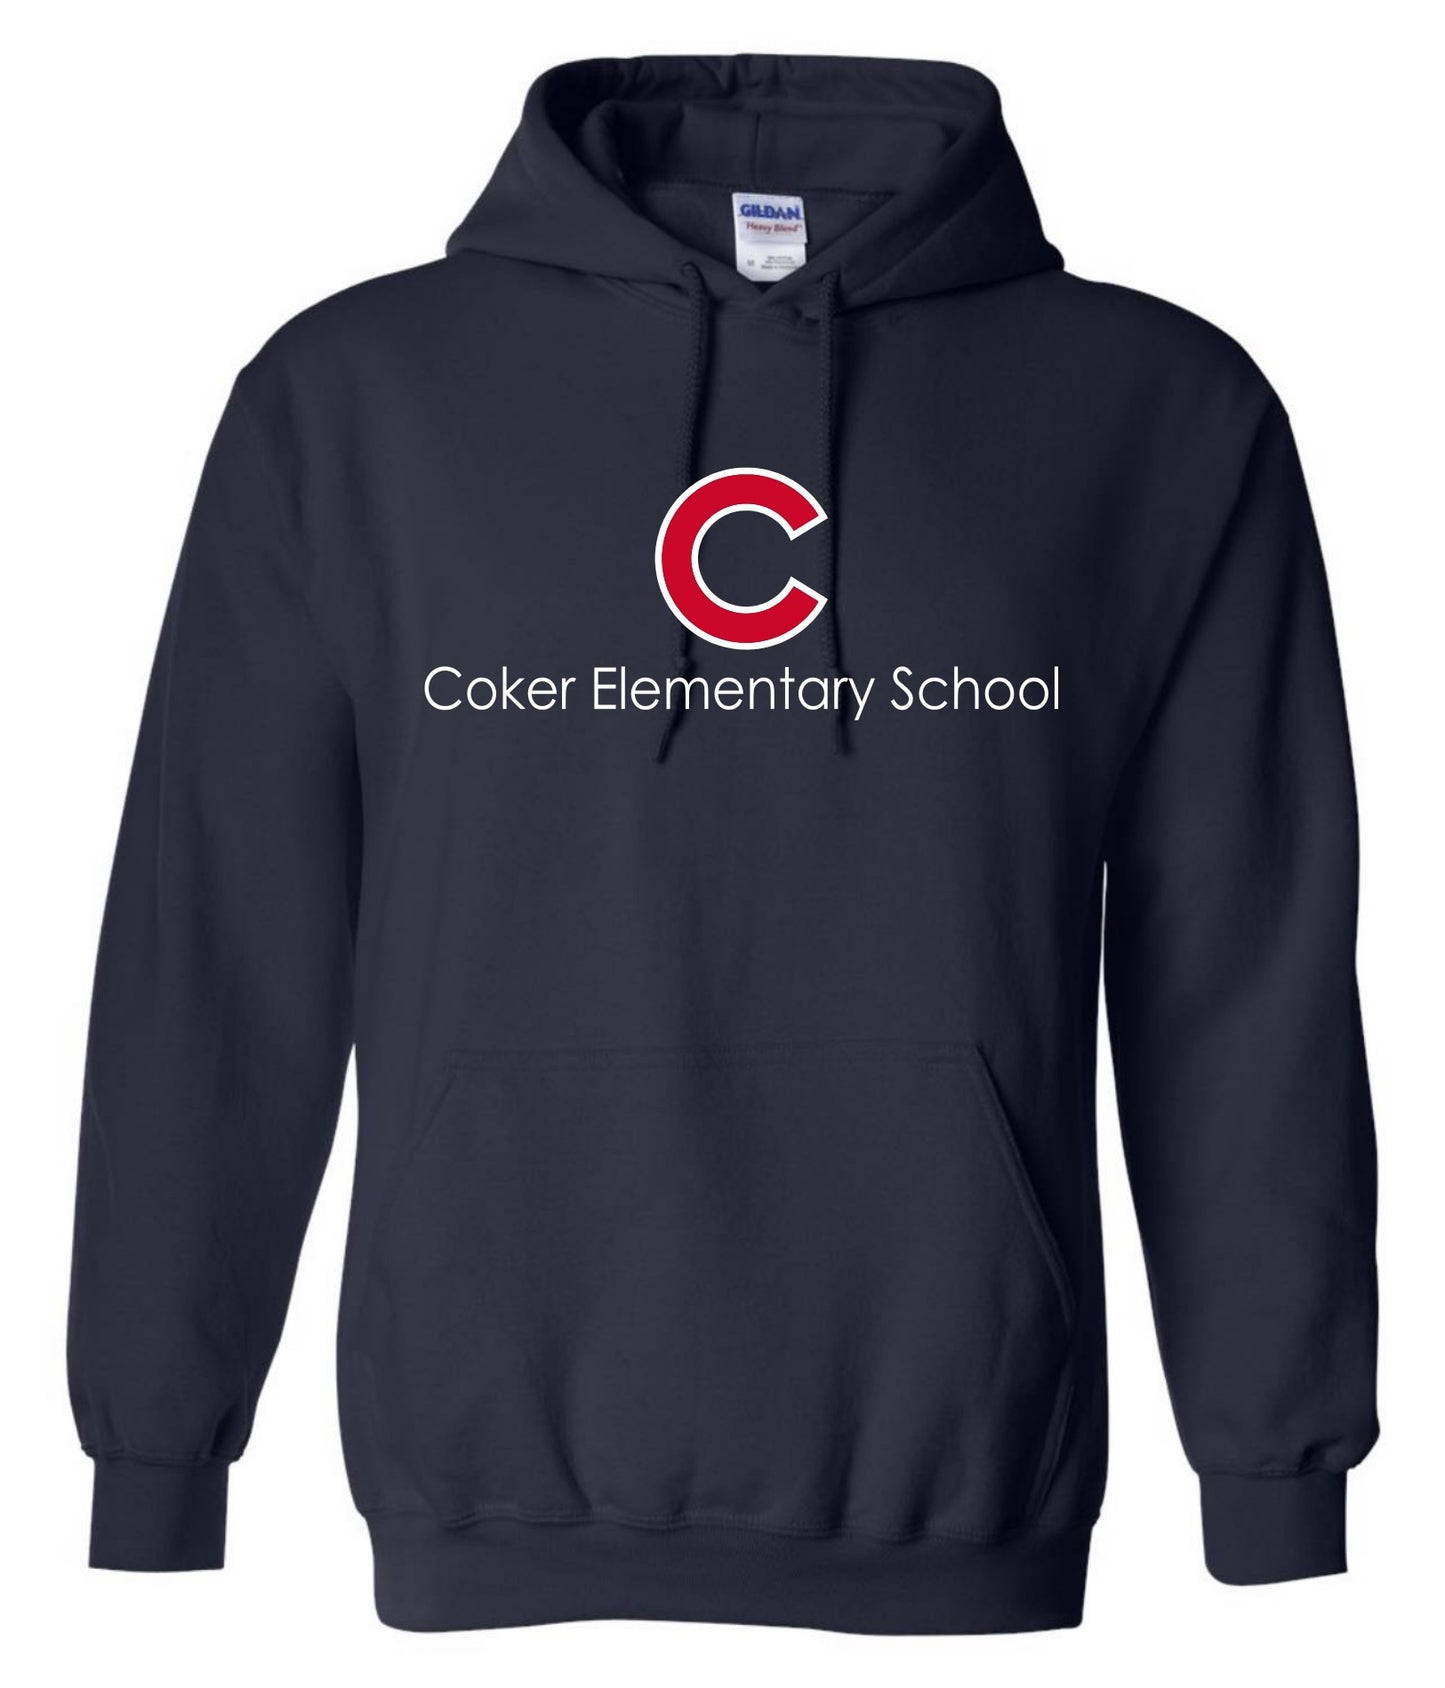 Coker Elementary School Hoodie